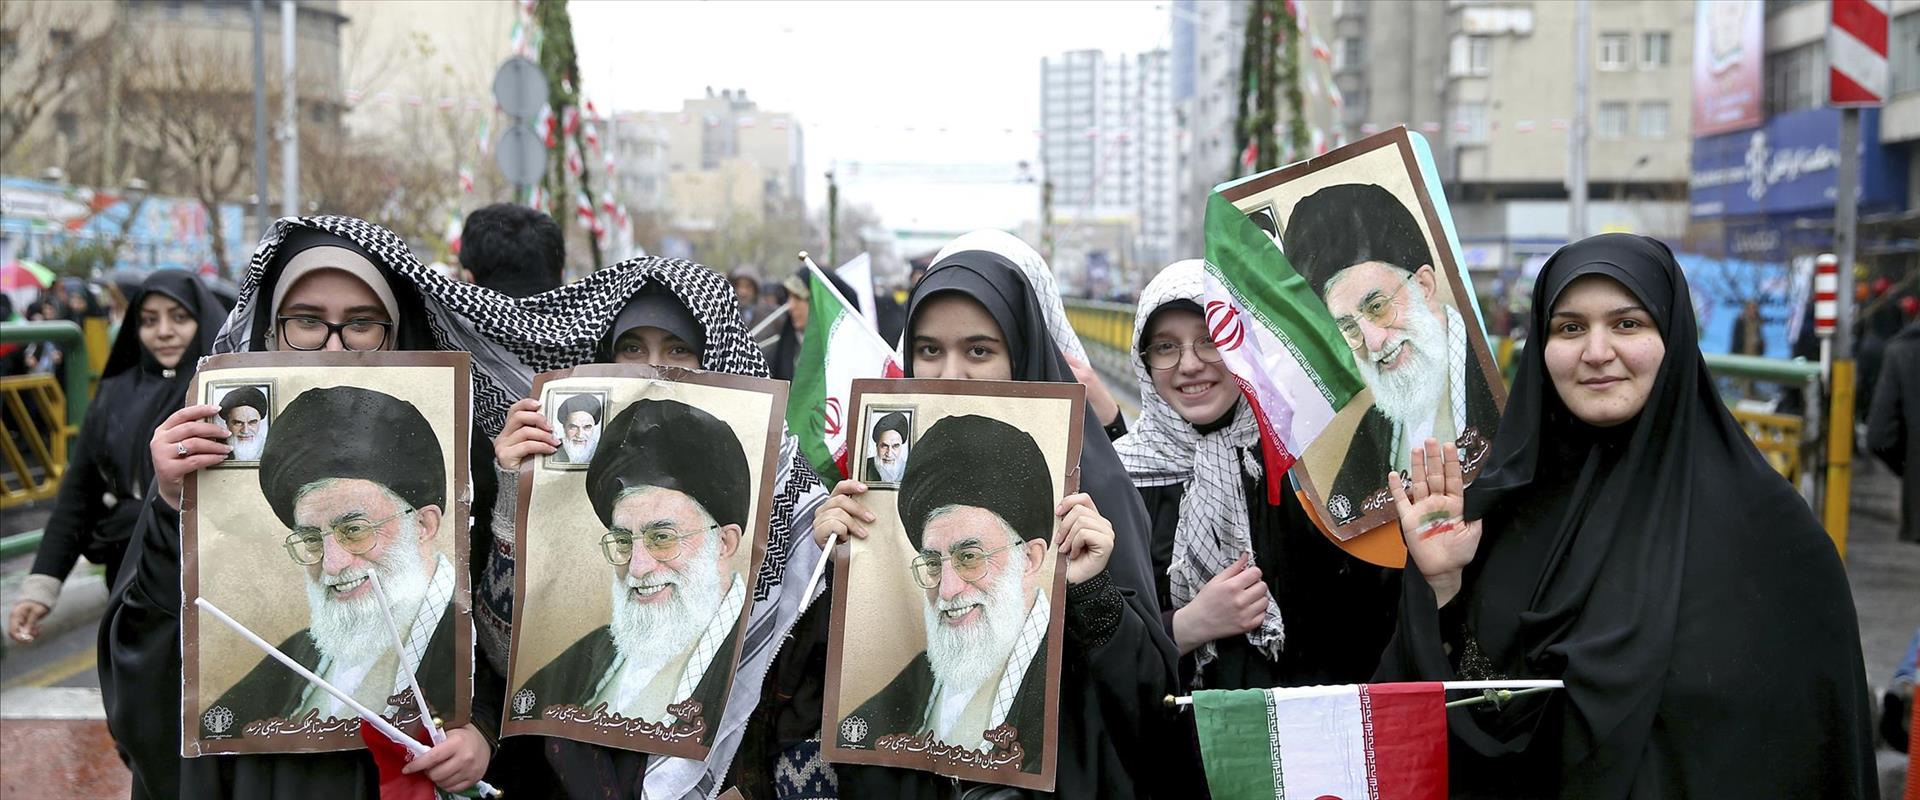 חגיגות 40 שנה למהפכה האסלאמית באיראן